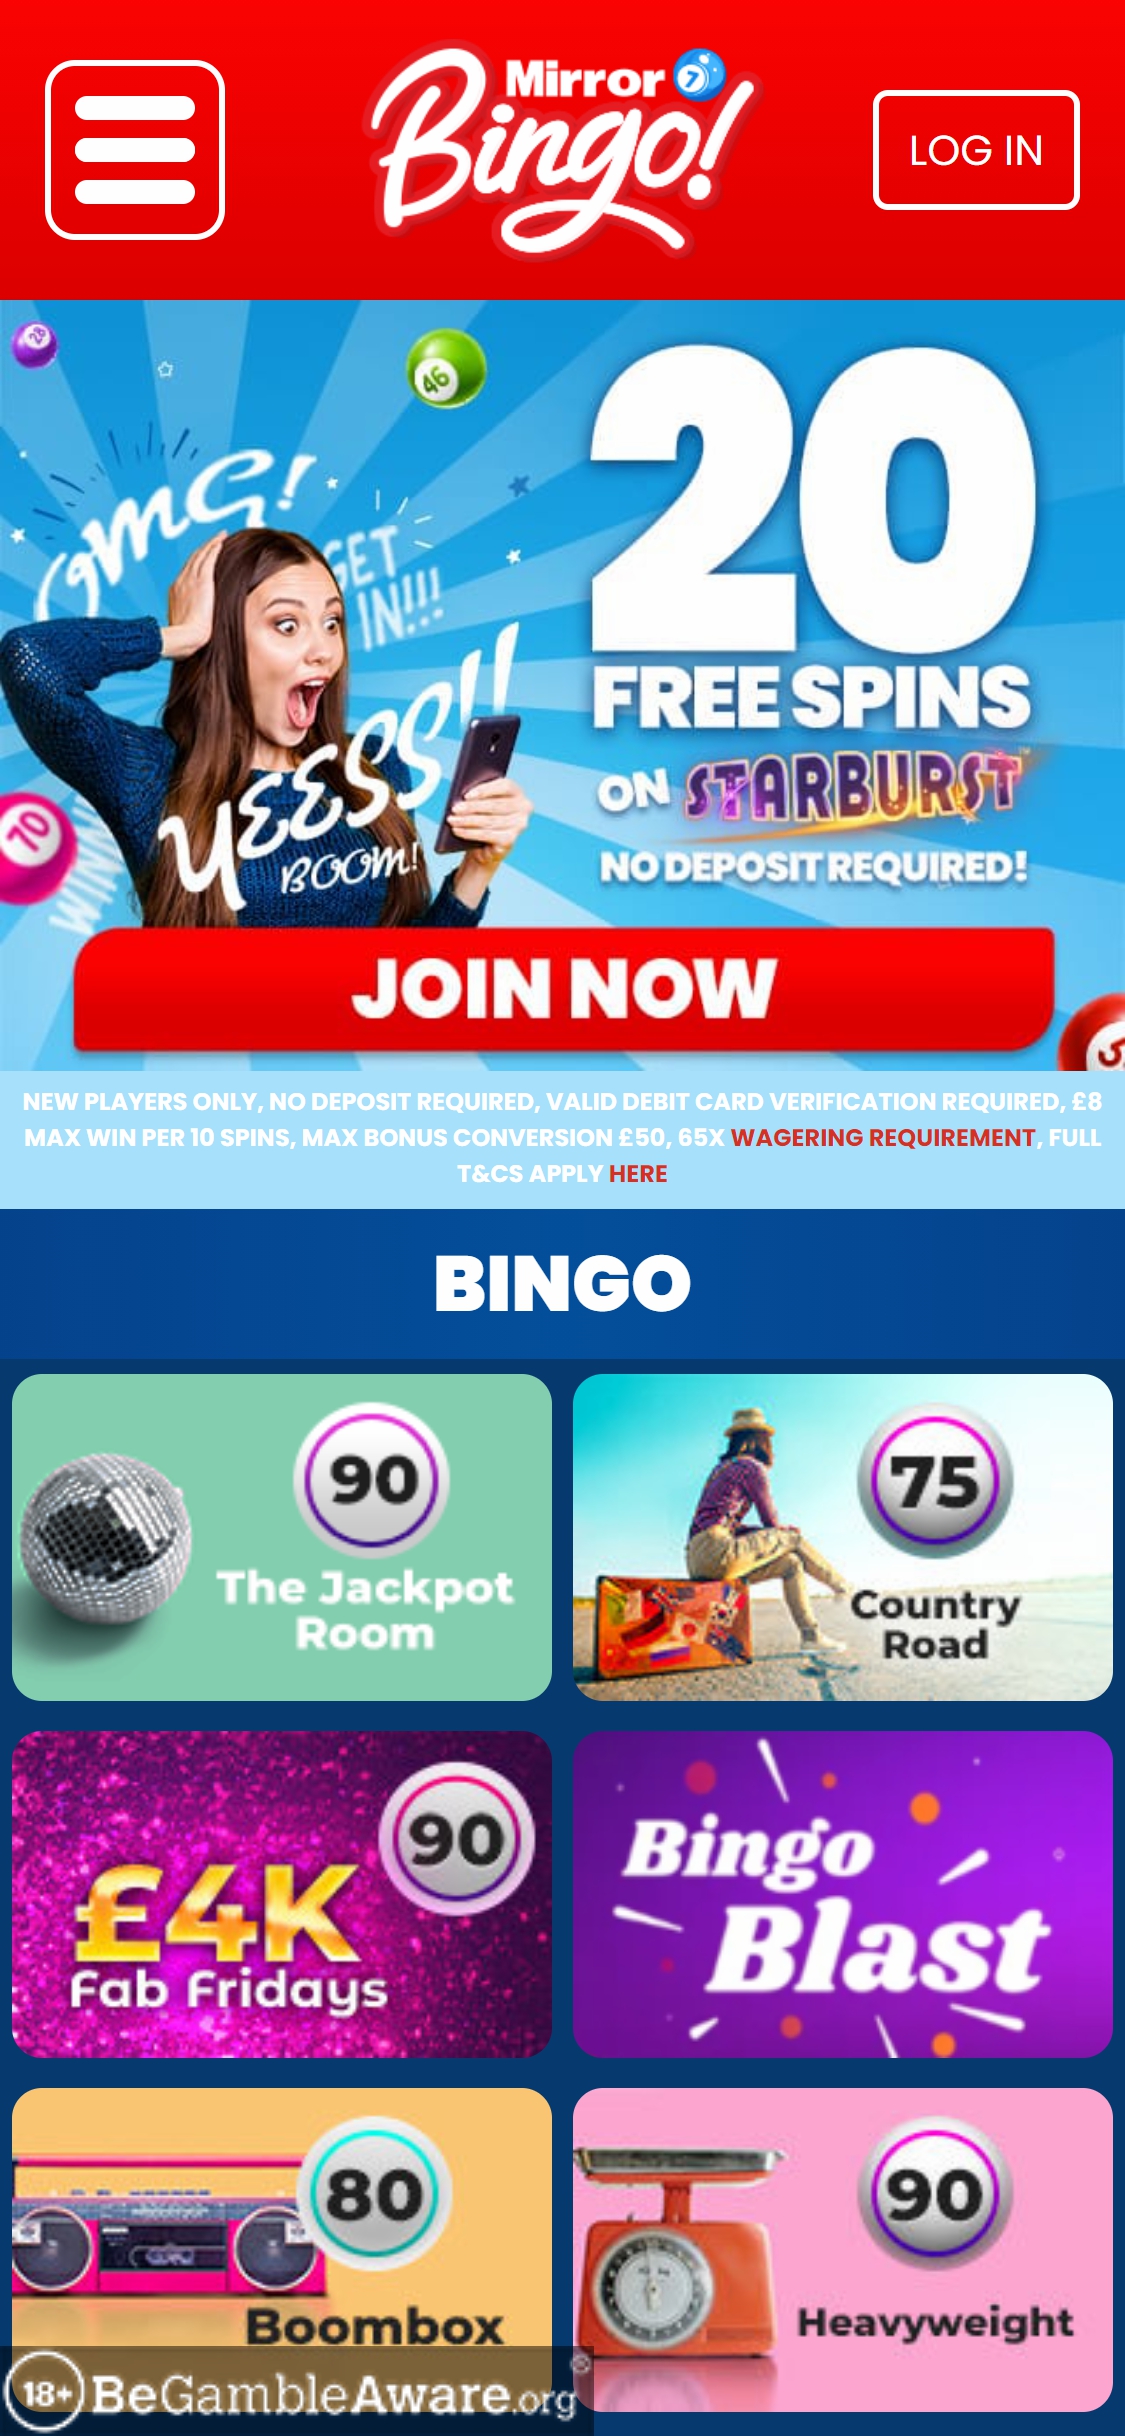 Mirror Bingo Casino Mobile Review